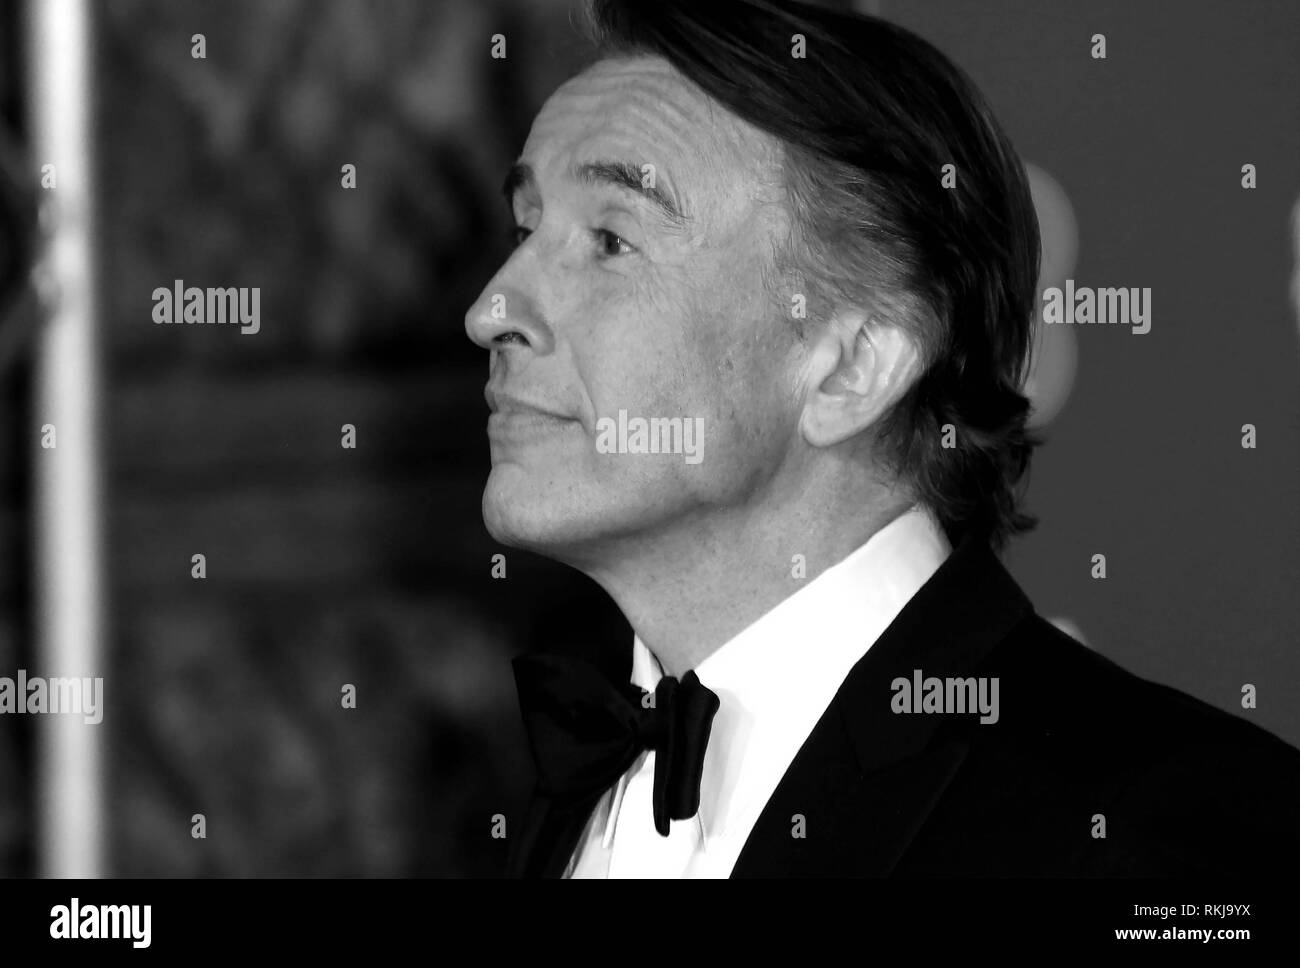 Feb 10, 2019 - Steve Coogan fréquentant EE British Academy Film Awards 2019 - Autre point de vue, le Royal Albert Hall à Londres, Royaume-Uni Banque D'Images